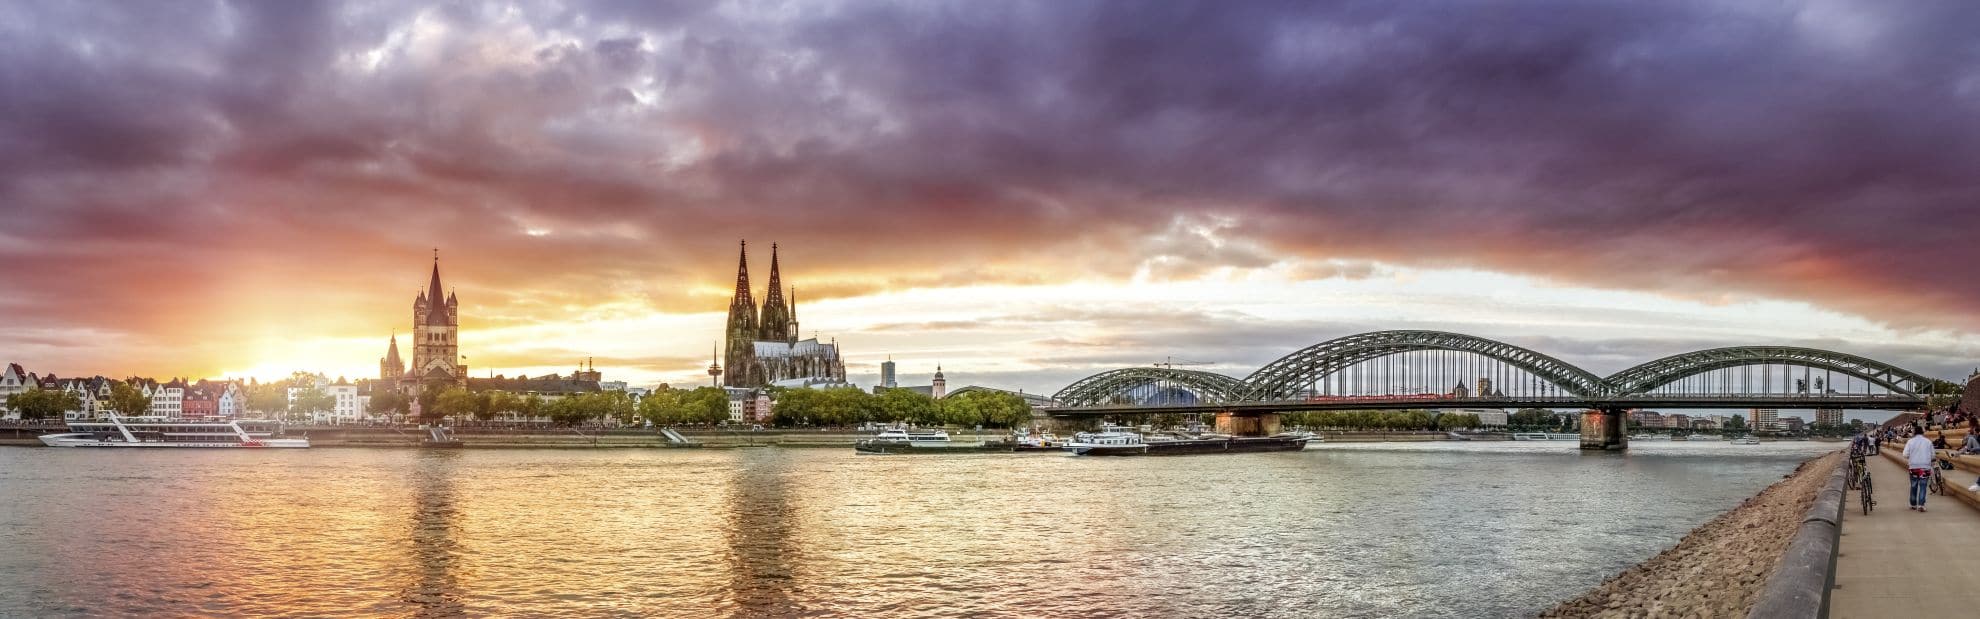 Köln, Rheinufer mit Dom, Groß St. Martin und Hohenzollernbrücke